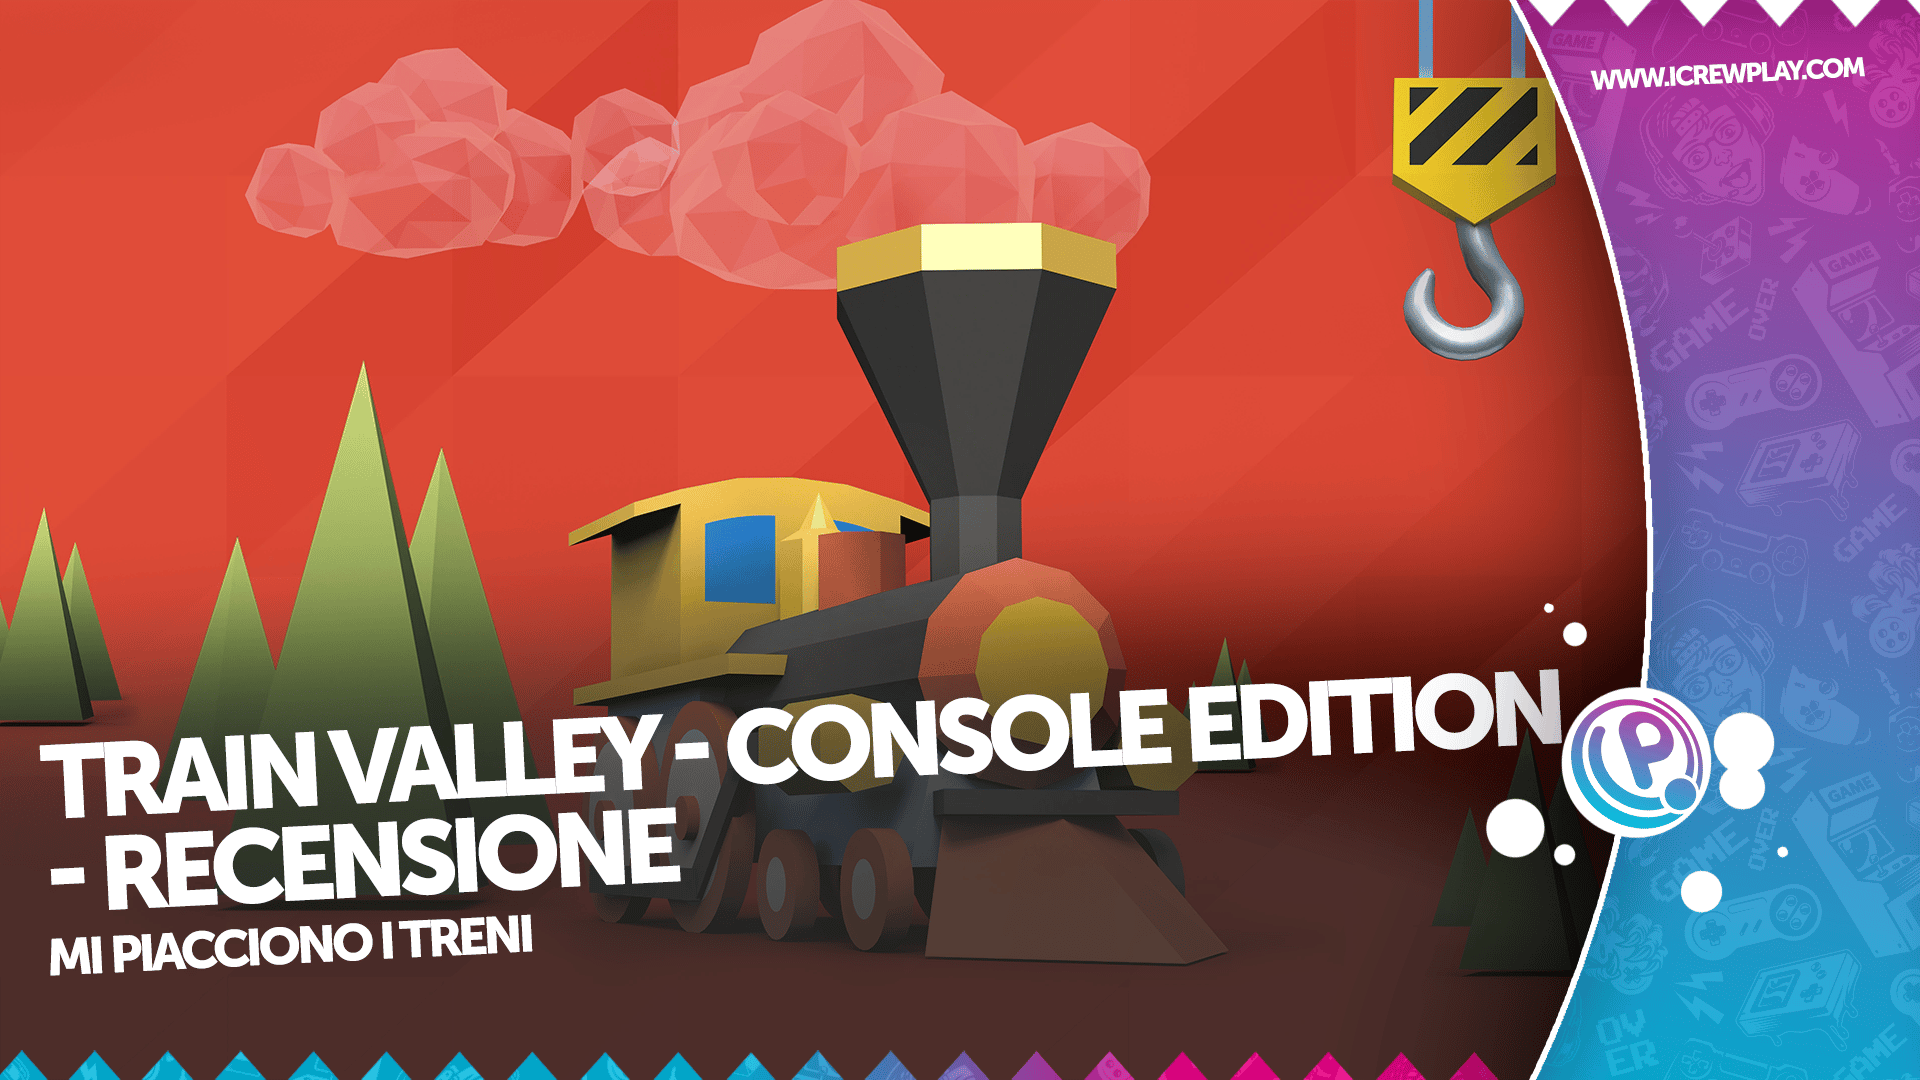 Train Valley: Console Edition - Recensione per Nintendo Switch 4